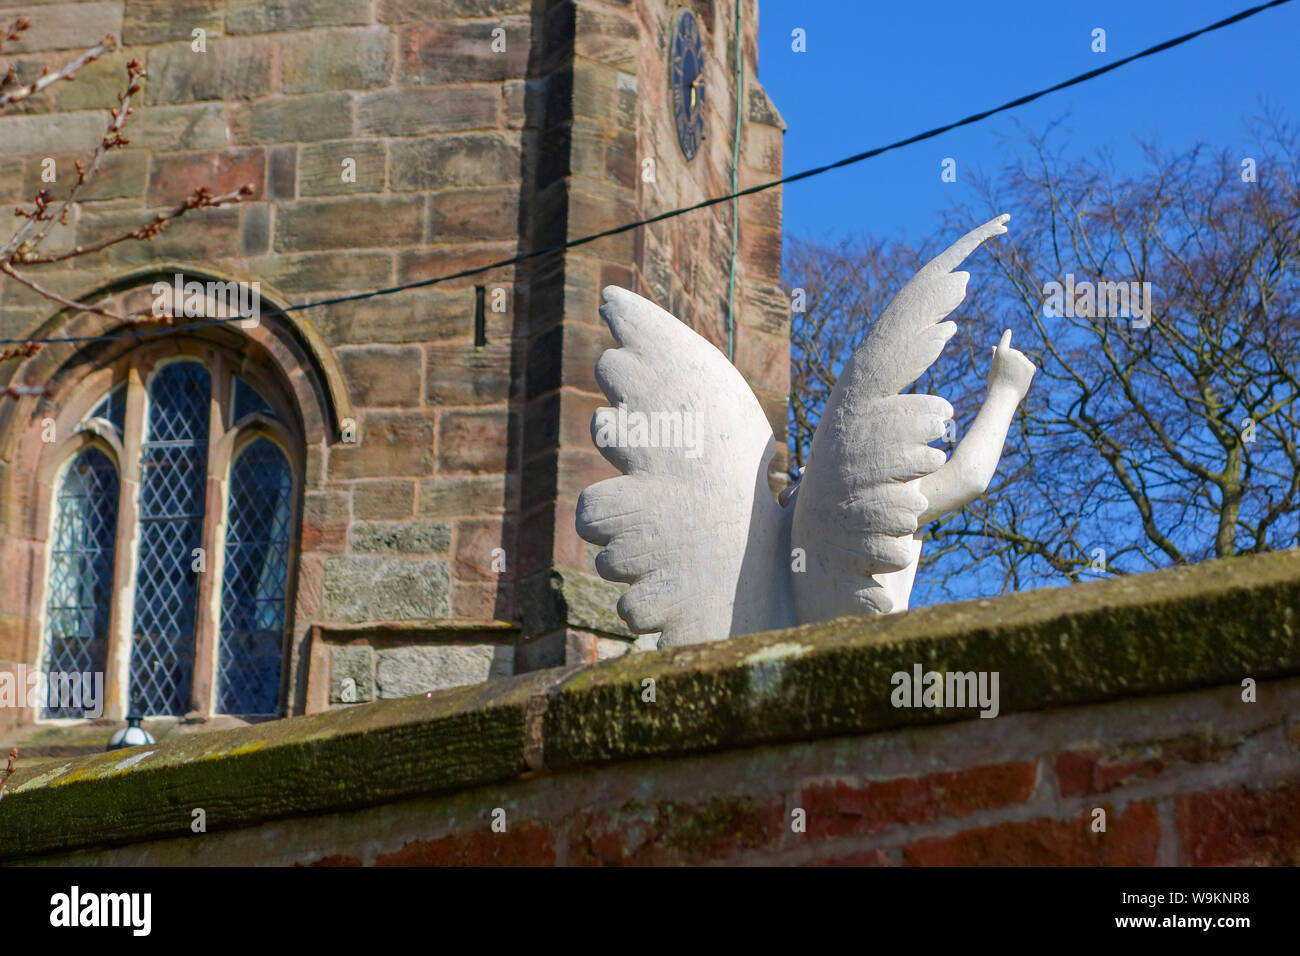 Un querubín alado o ángel memorial en una tumba en un patio de la Iglesia con las alas blancas y una mano y un dedo señalando hacia el cielo Foto de stock